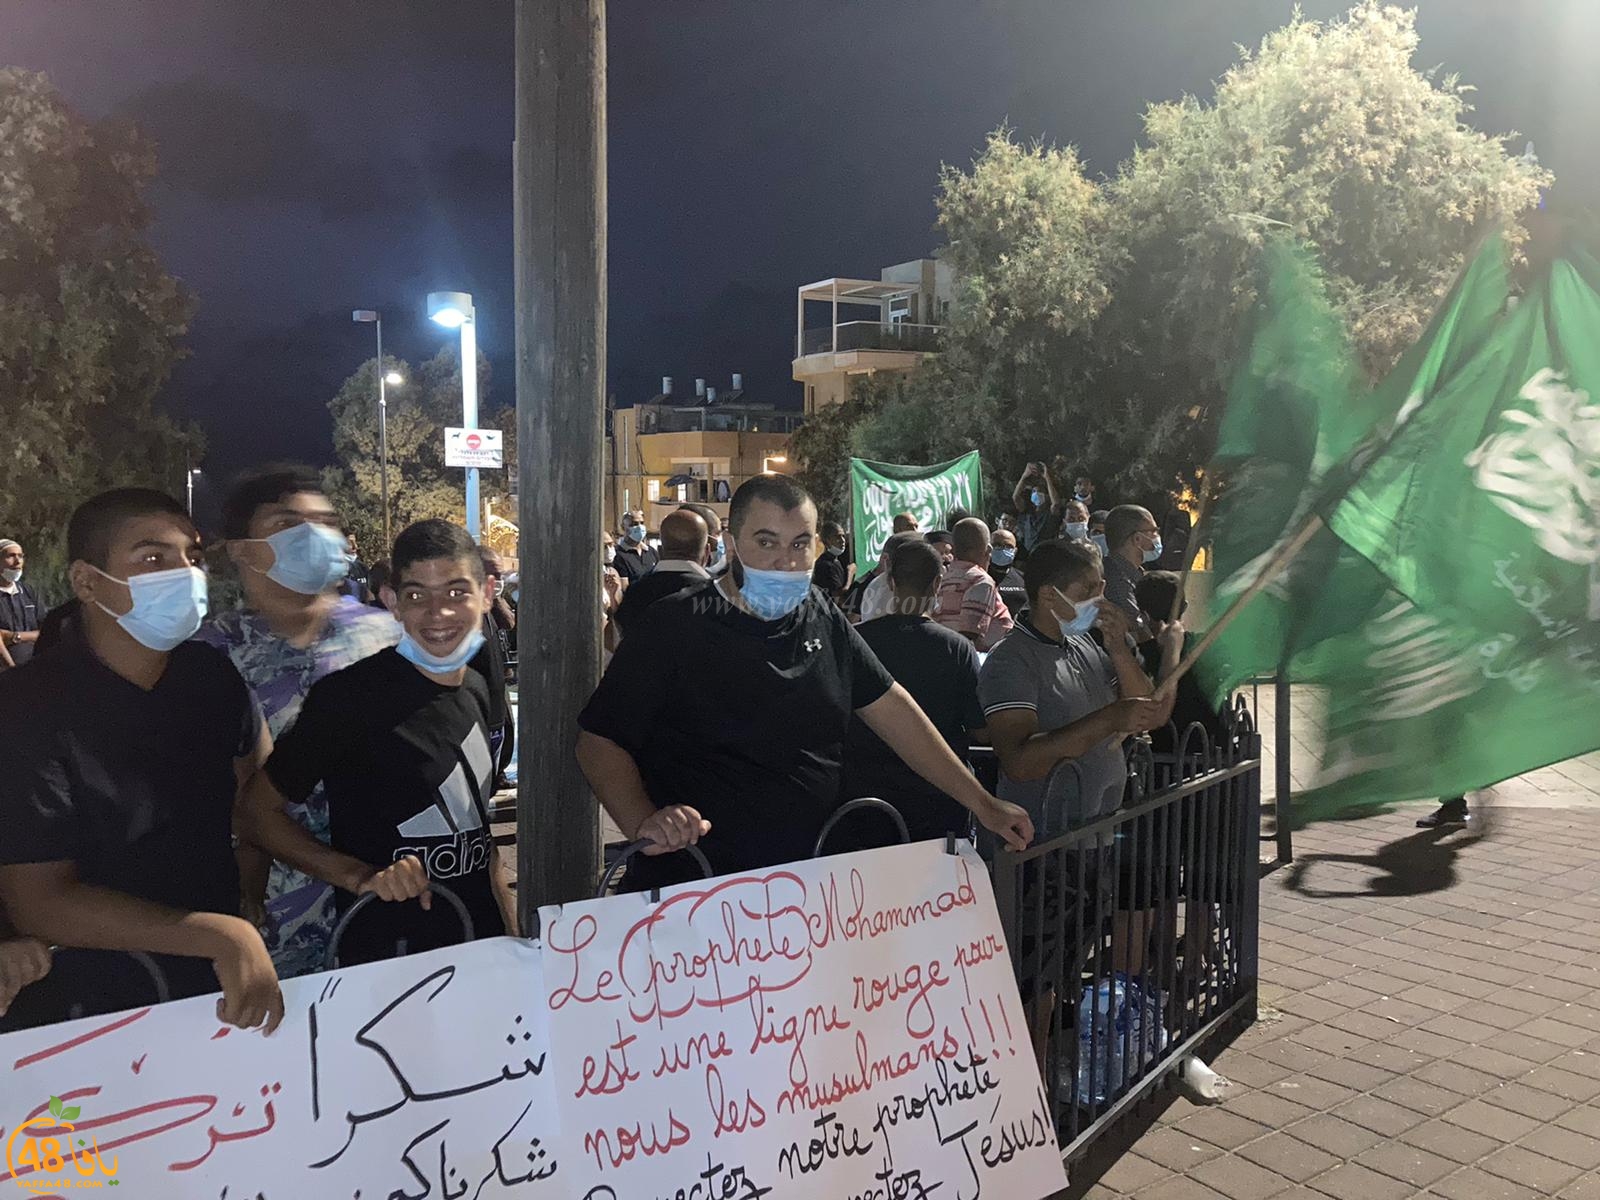  فيديو: تظاهرة غاضبة في يافا ضد اساءة الصحف الفرنسية للنبي محمد 